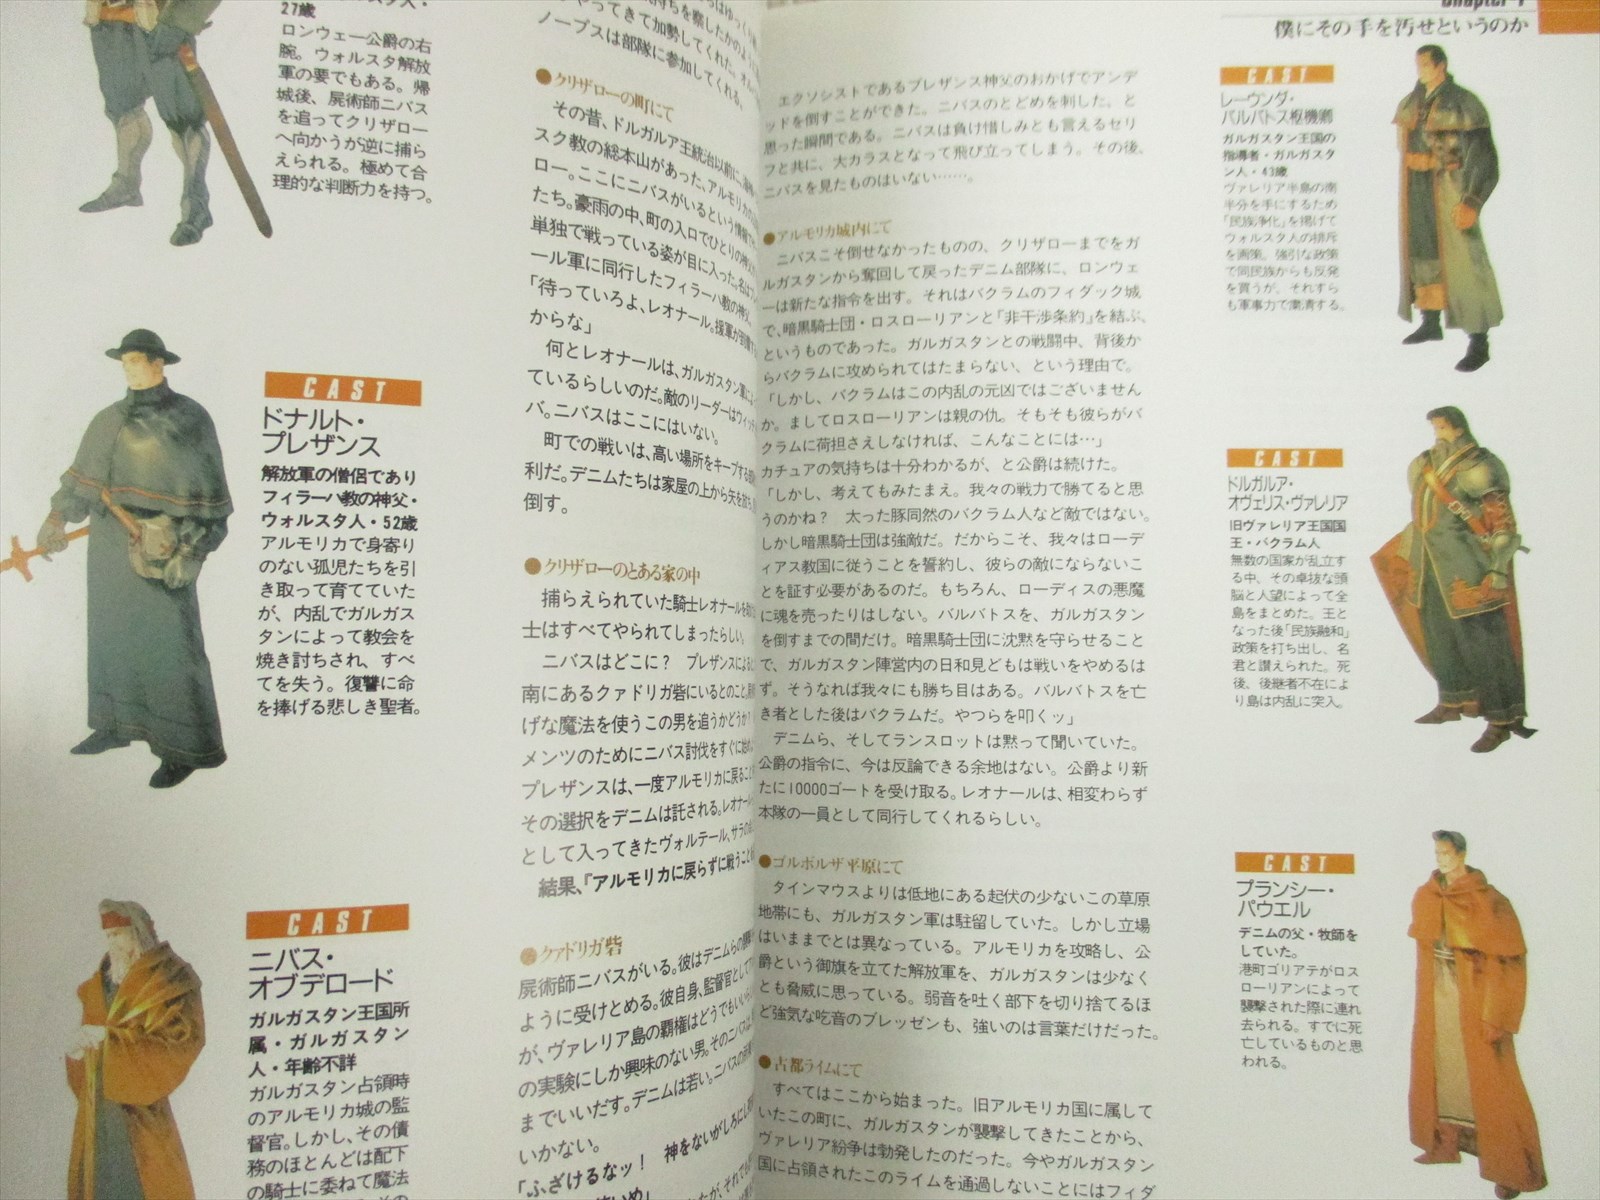 TACTICS OGRE Official Guide Super Famicom Book 1995 AP01 | eBay